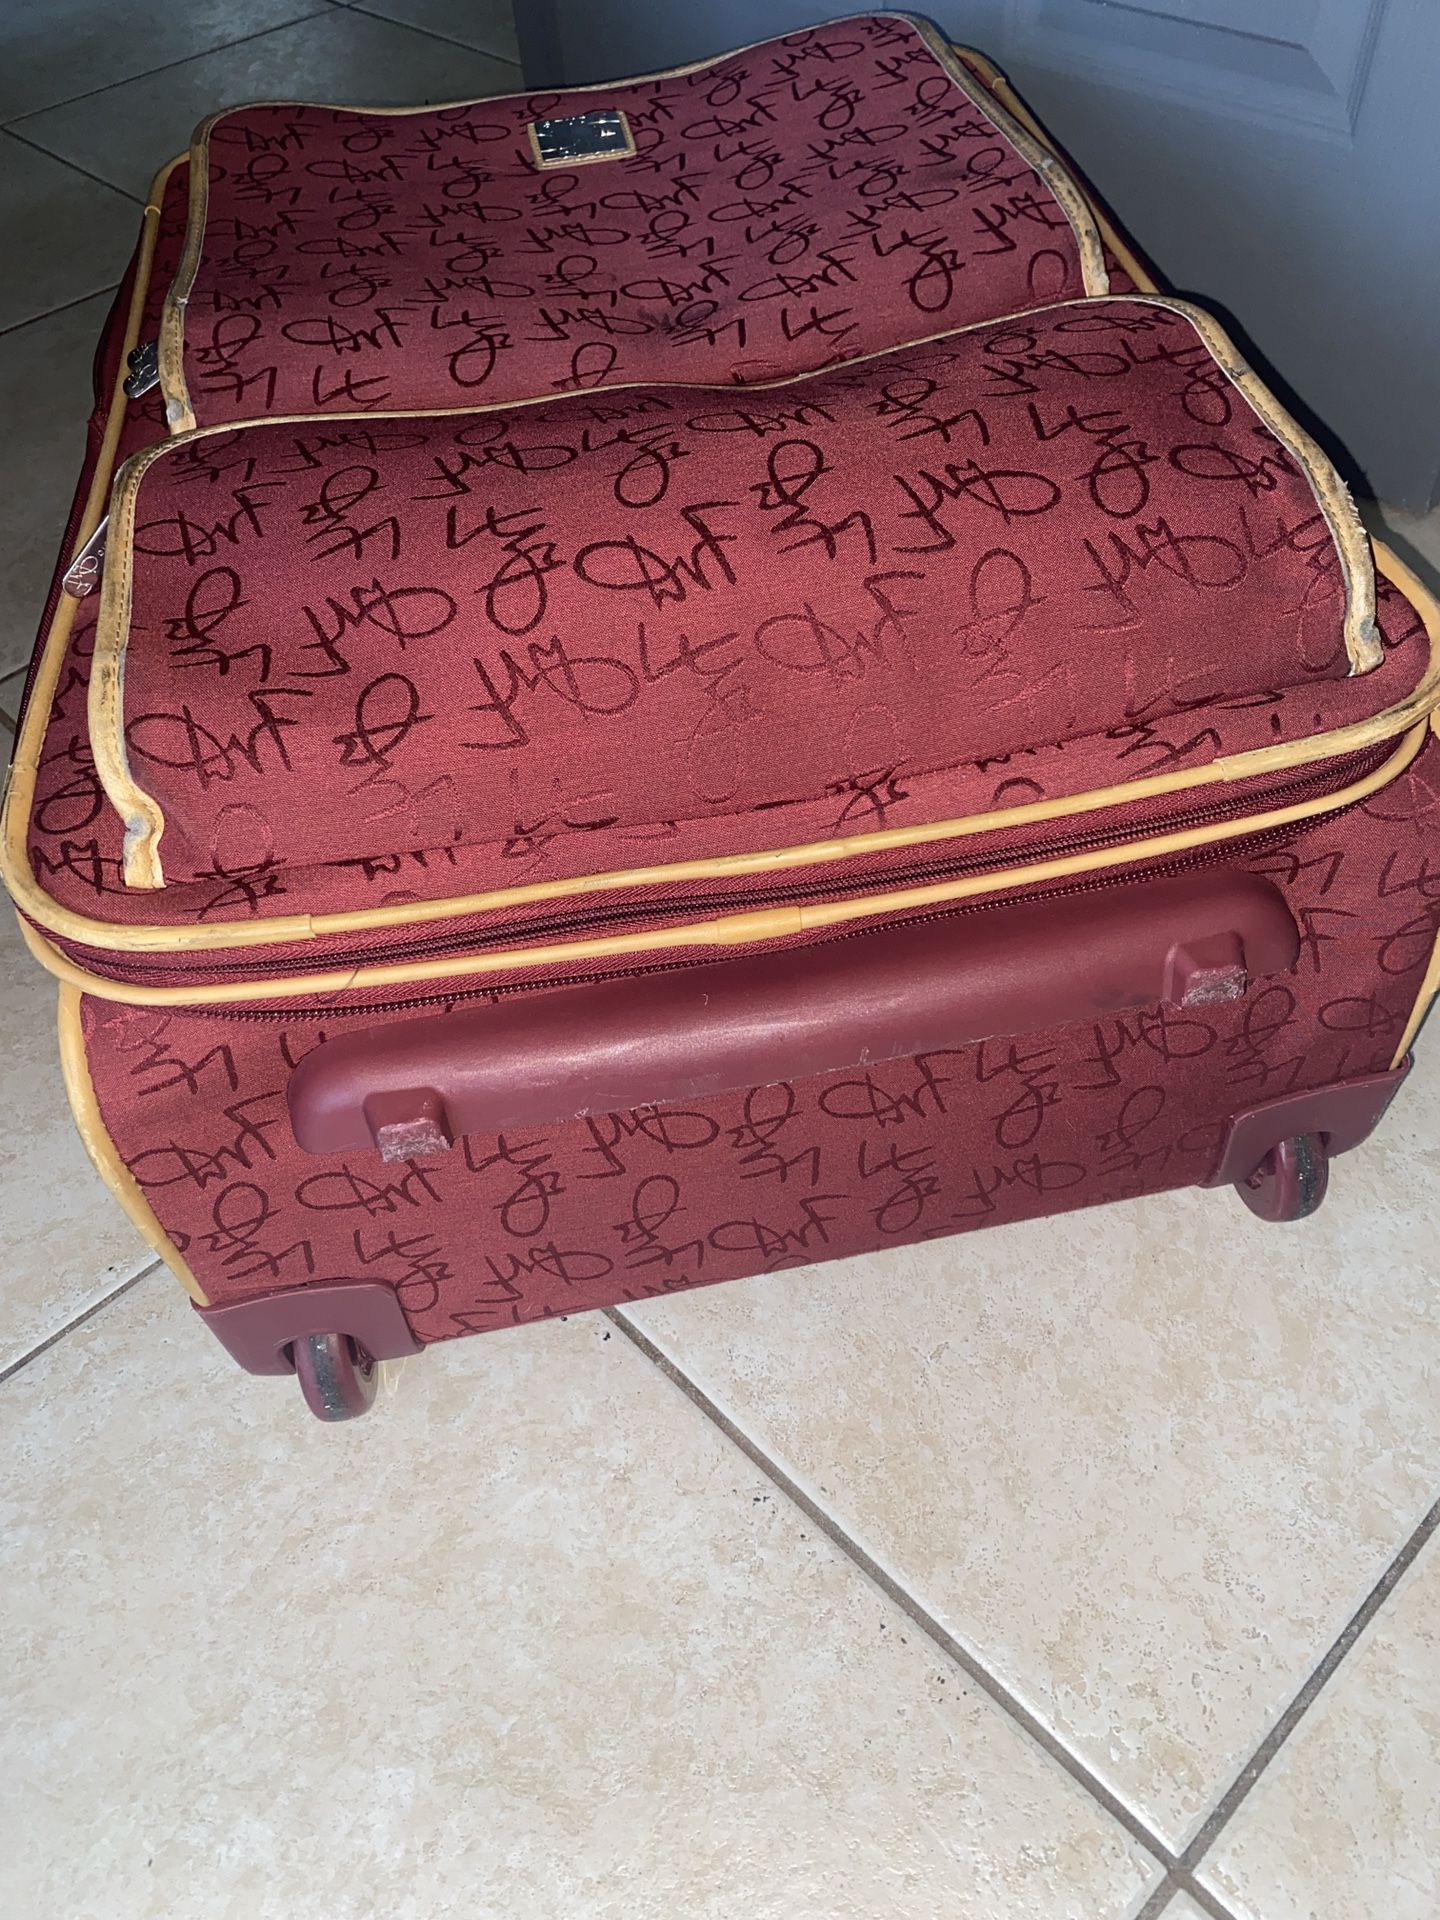 Diane Von Furstenberg Designer Luggage for Sale in Sun City, AZ - OfferUp